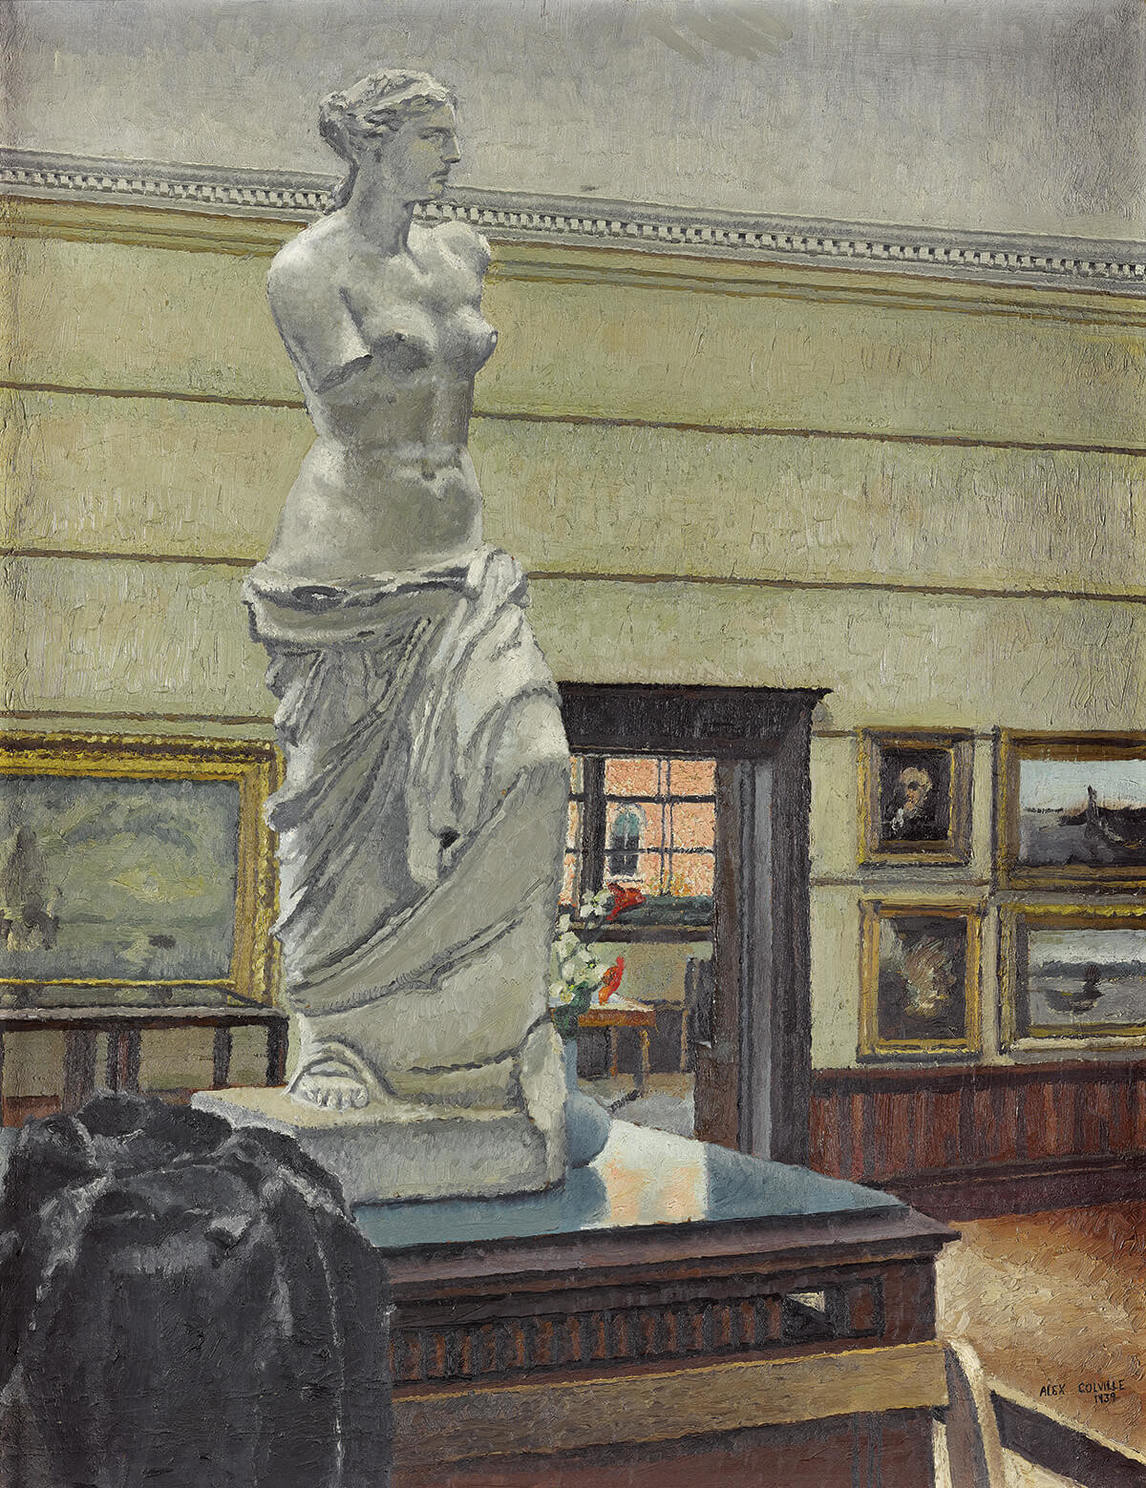 Art Canada Institute, Alex Colville, Interior Owens Art Gallery with Figure (Intérieur de la Galerie d’art Owens avec personnage), 1941